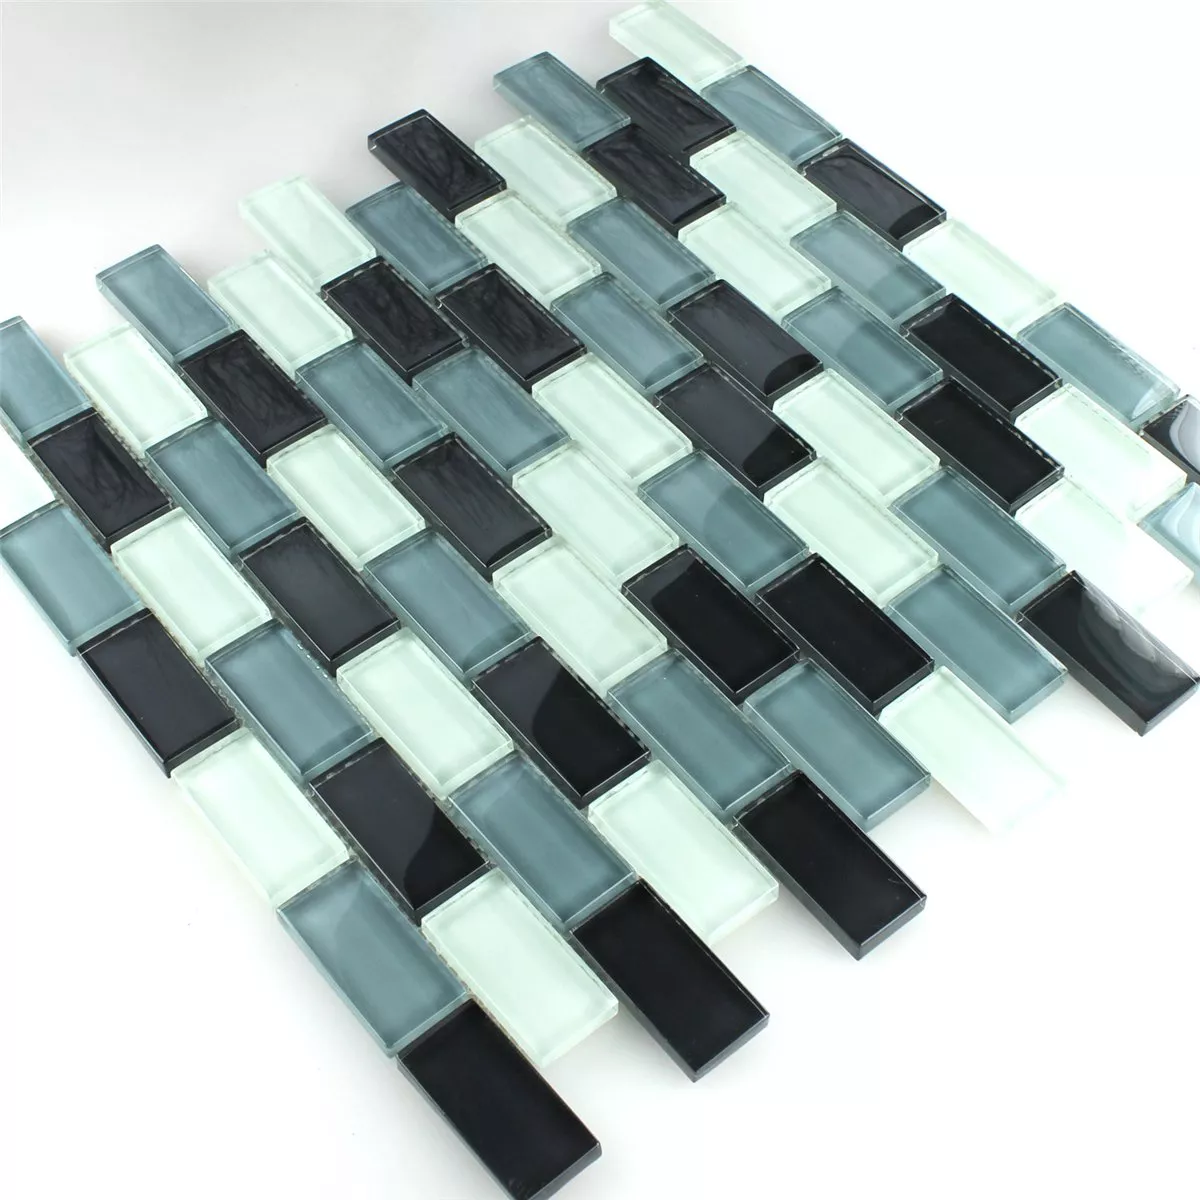 Sample Mosaic Tiles Glass Brick Grey Mix